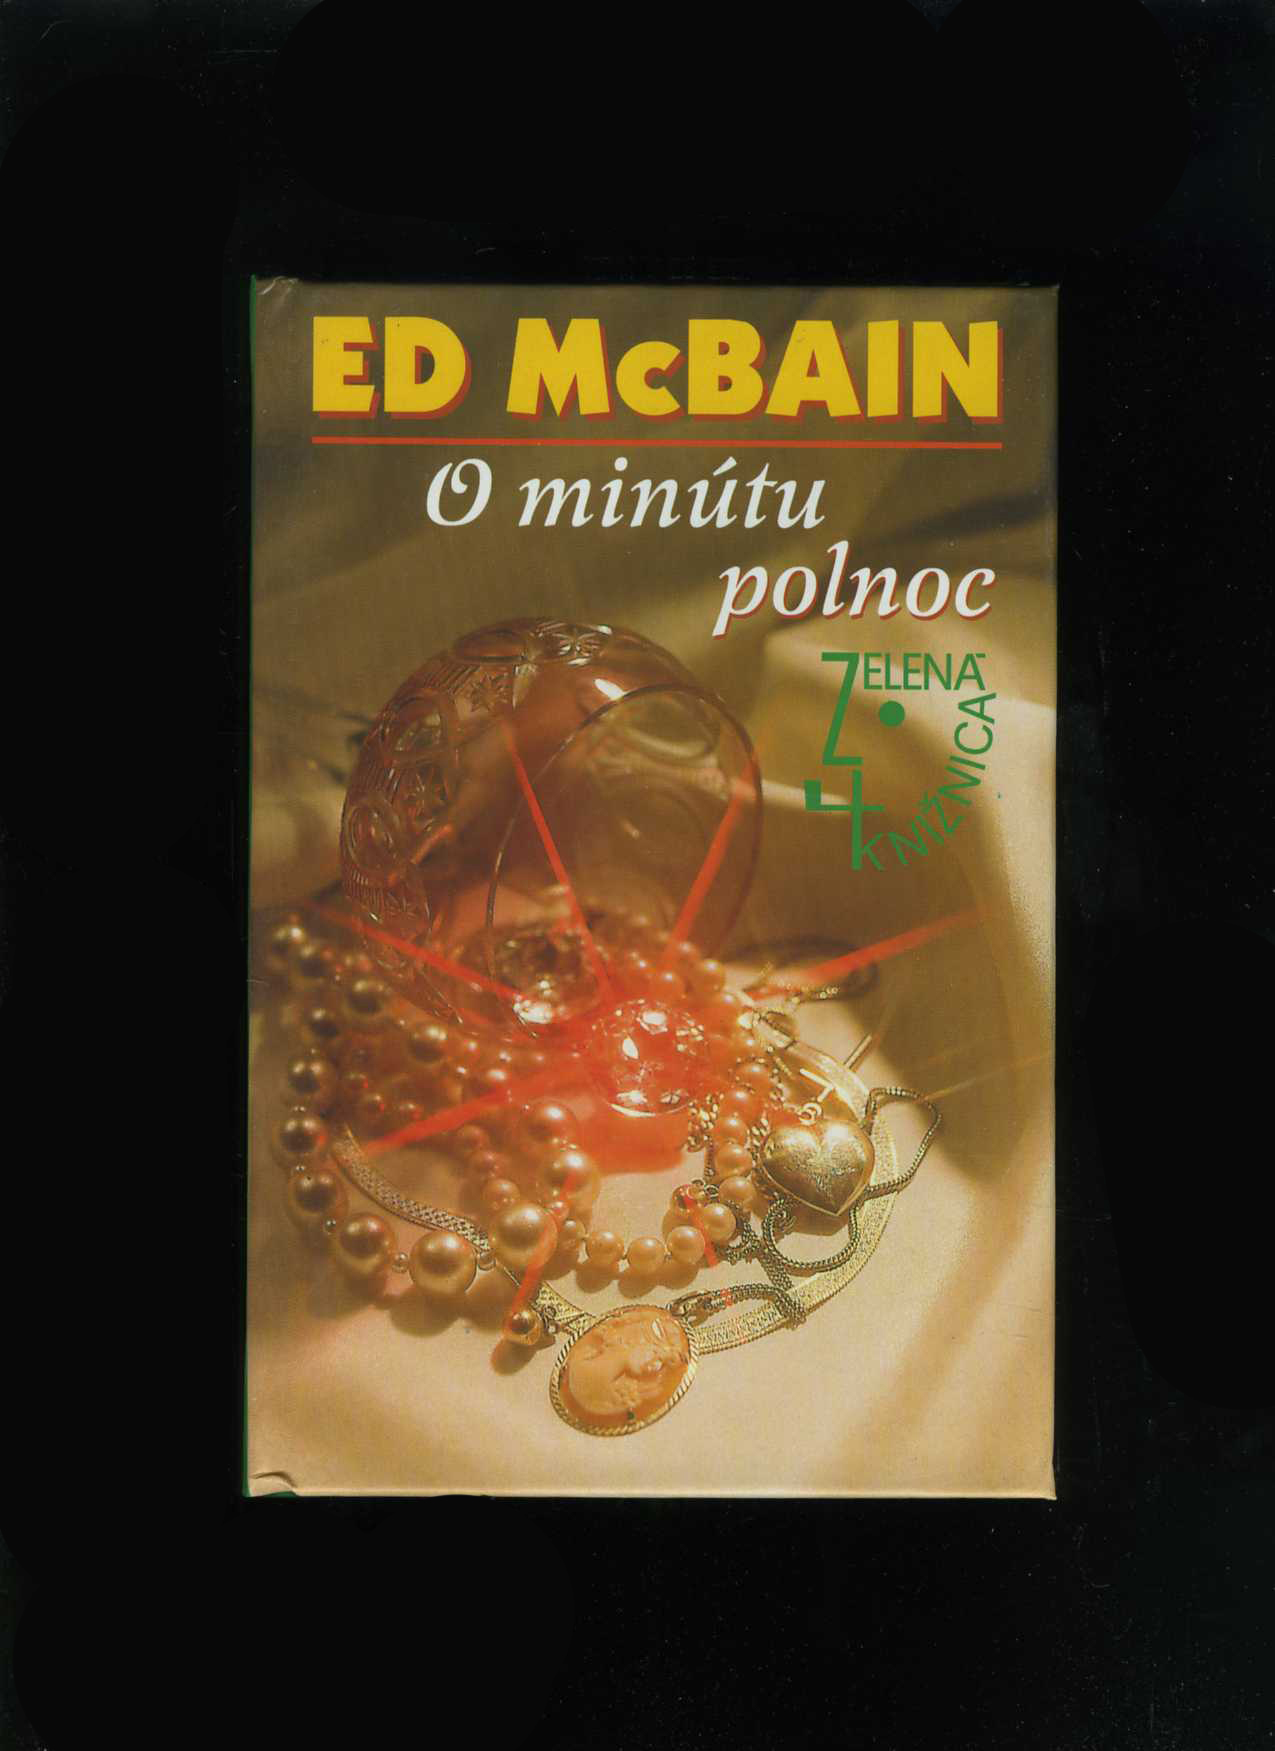 O minútu polnoc (Ed McBain)